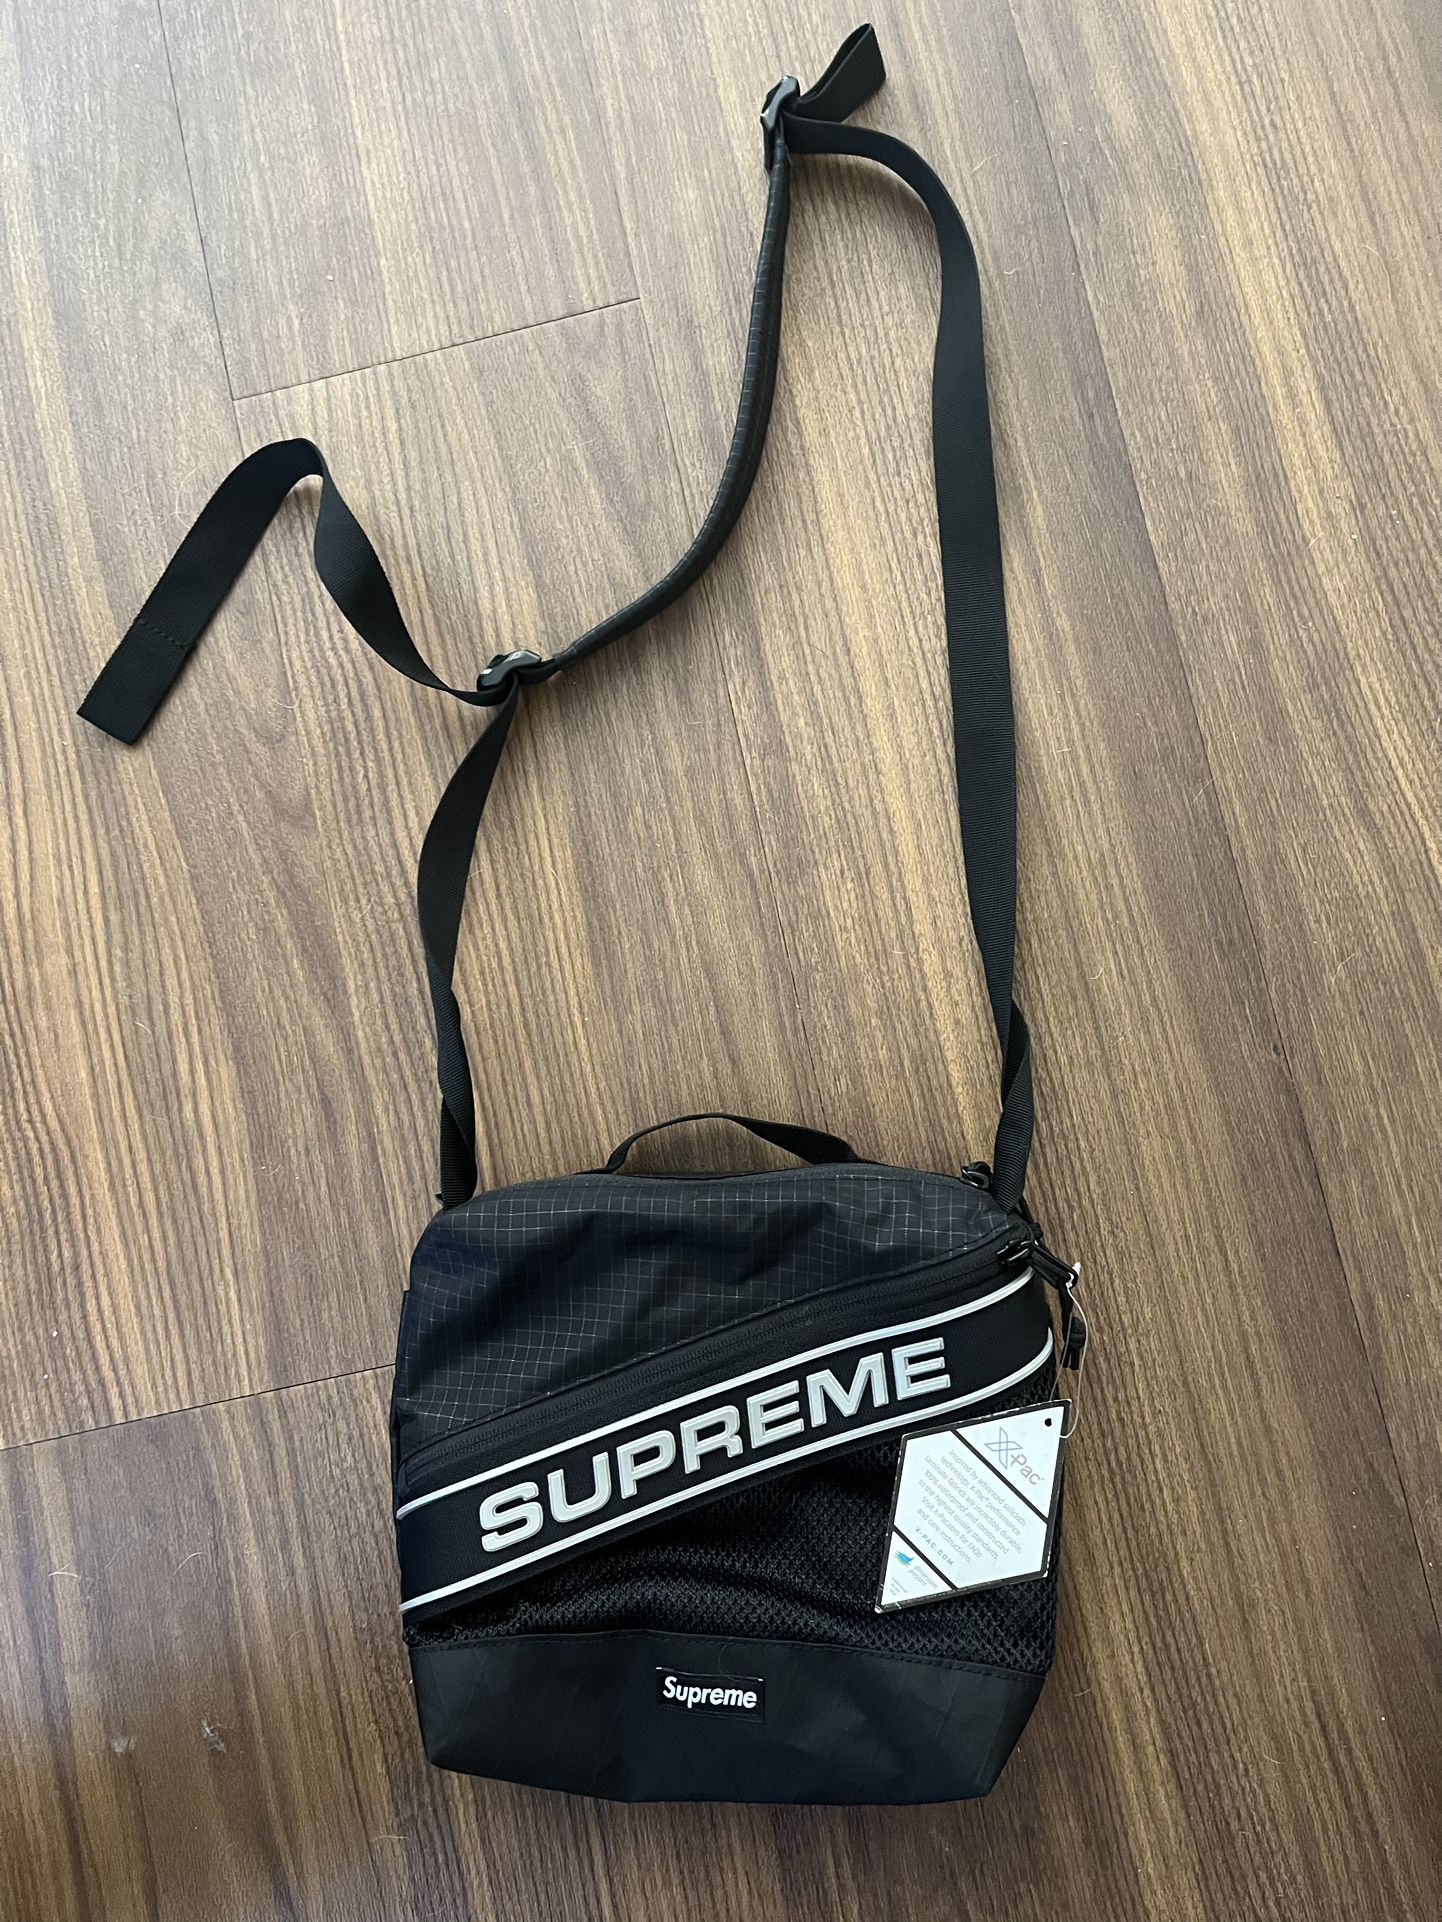 Supreme Bag Brand New